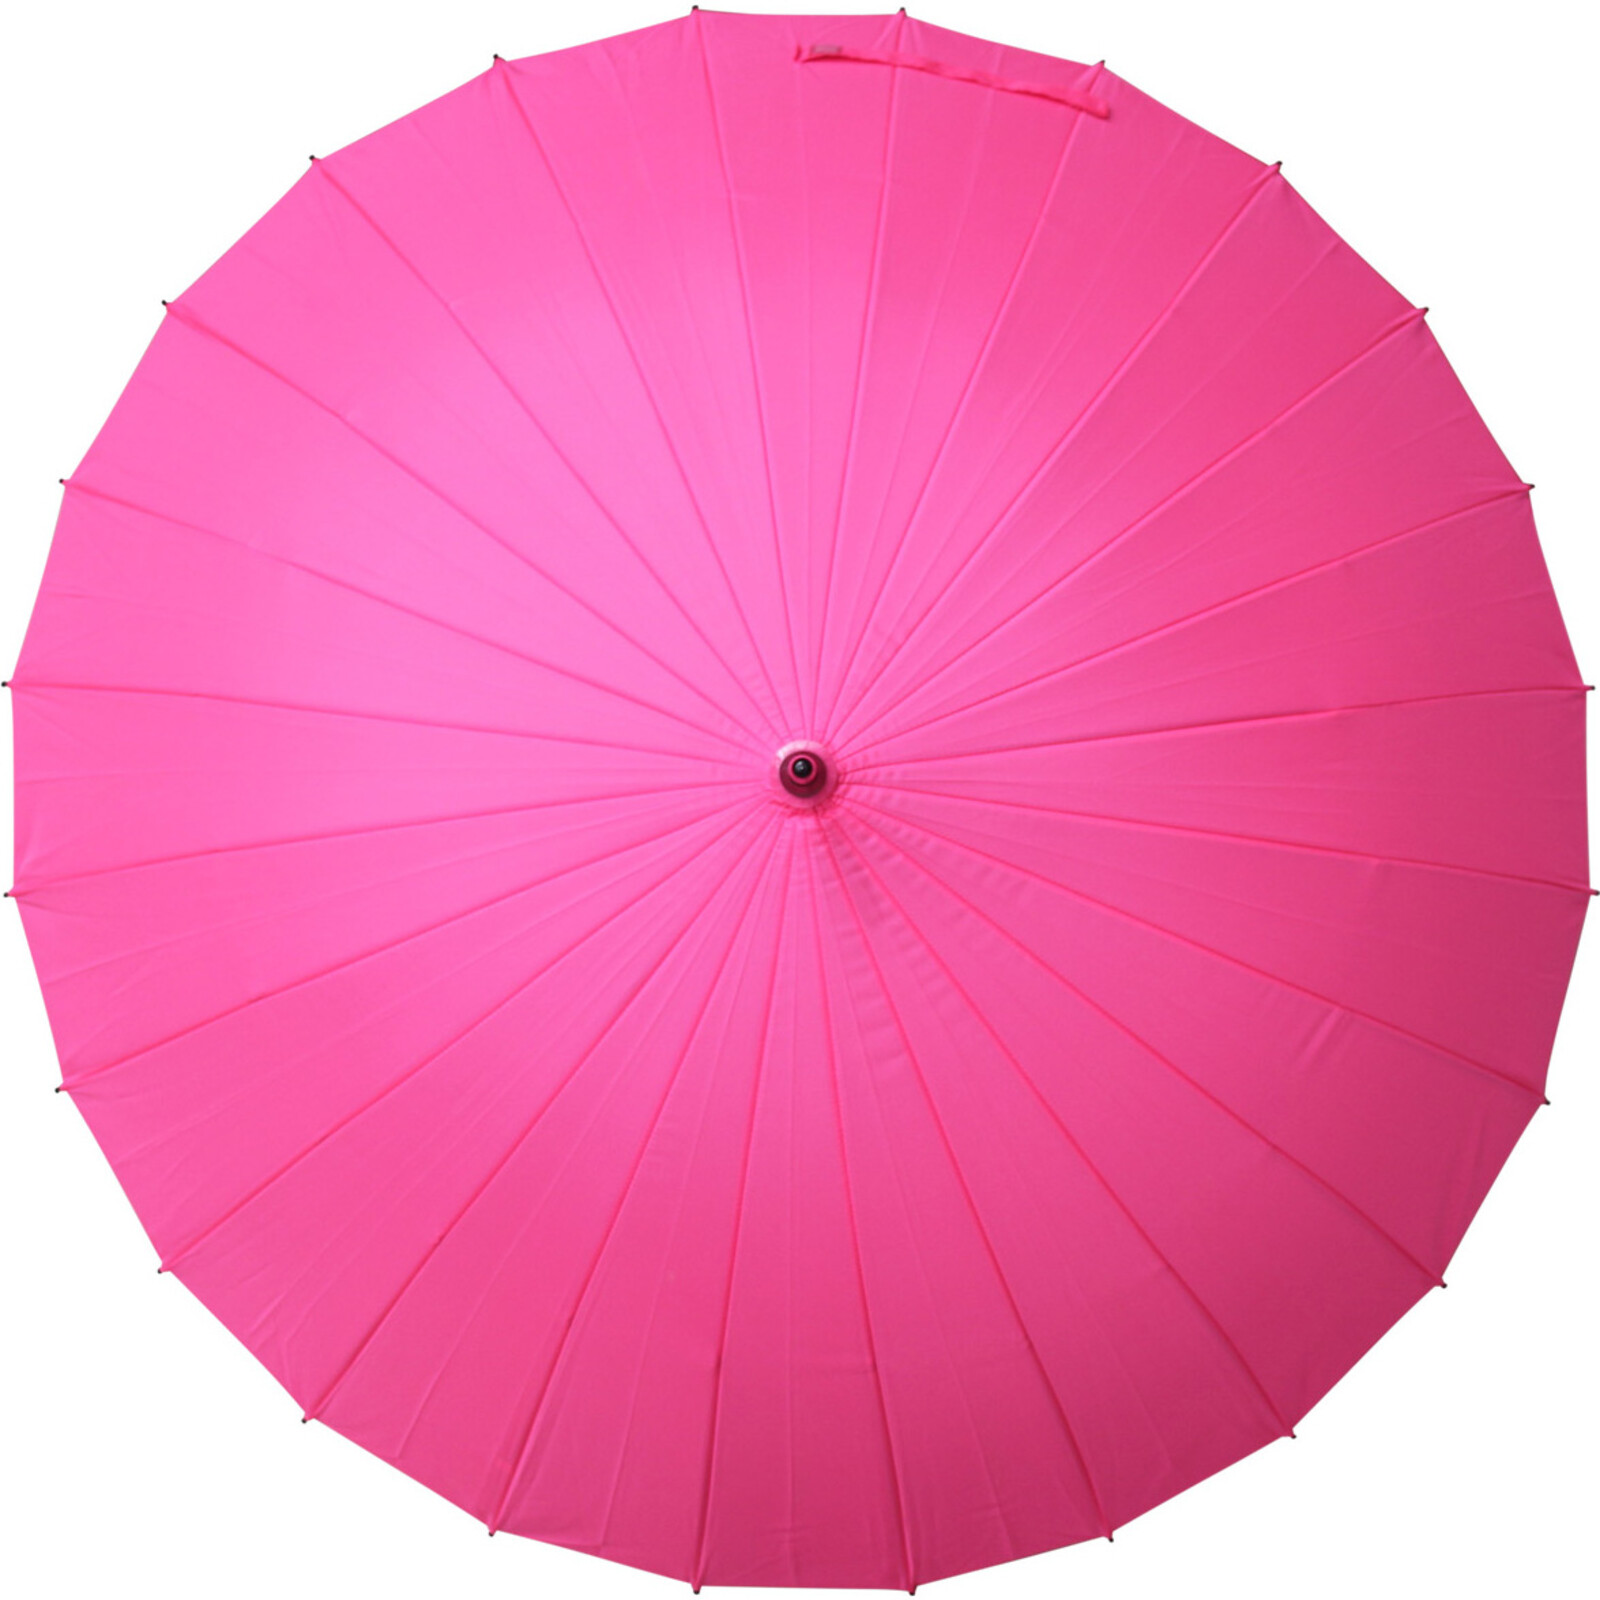 Umbrella Floral When Wet Pink